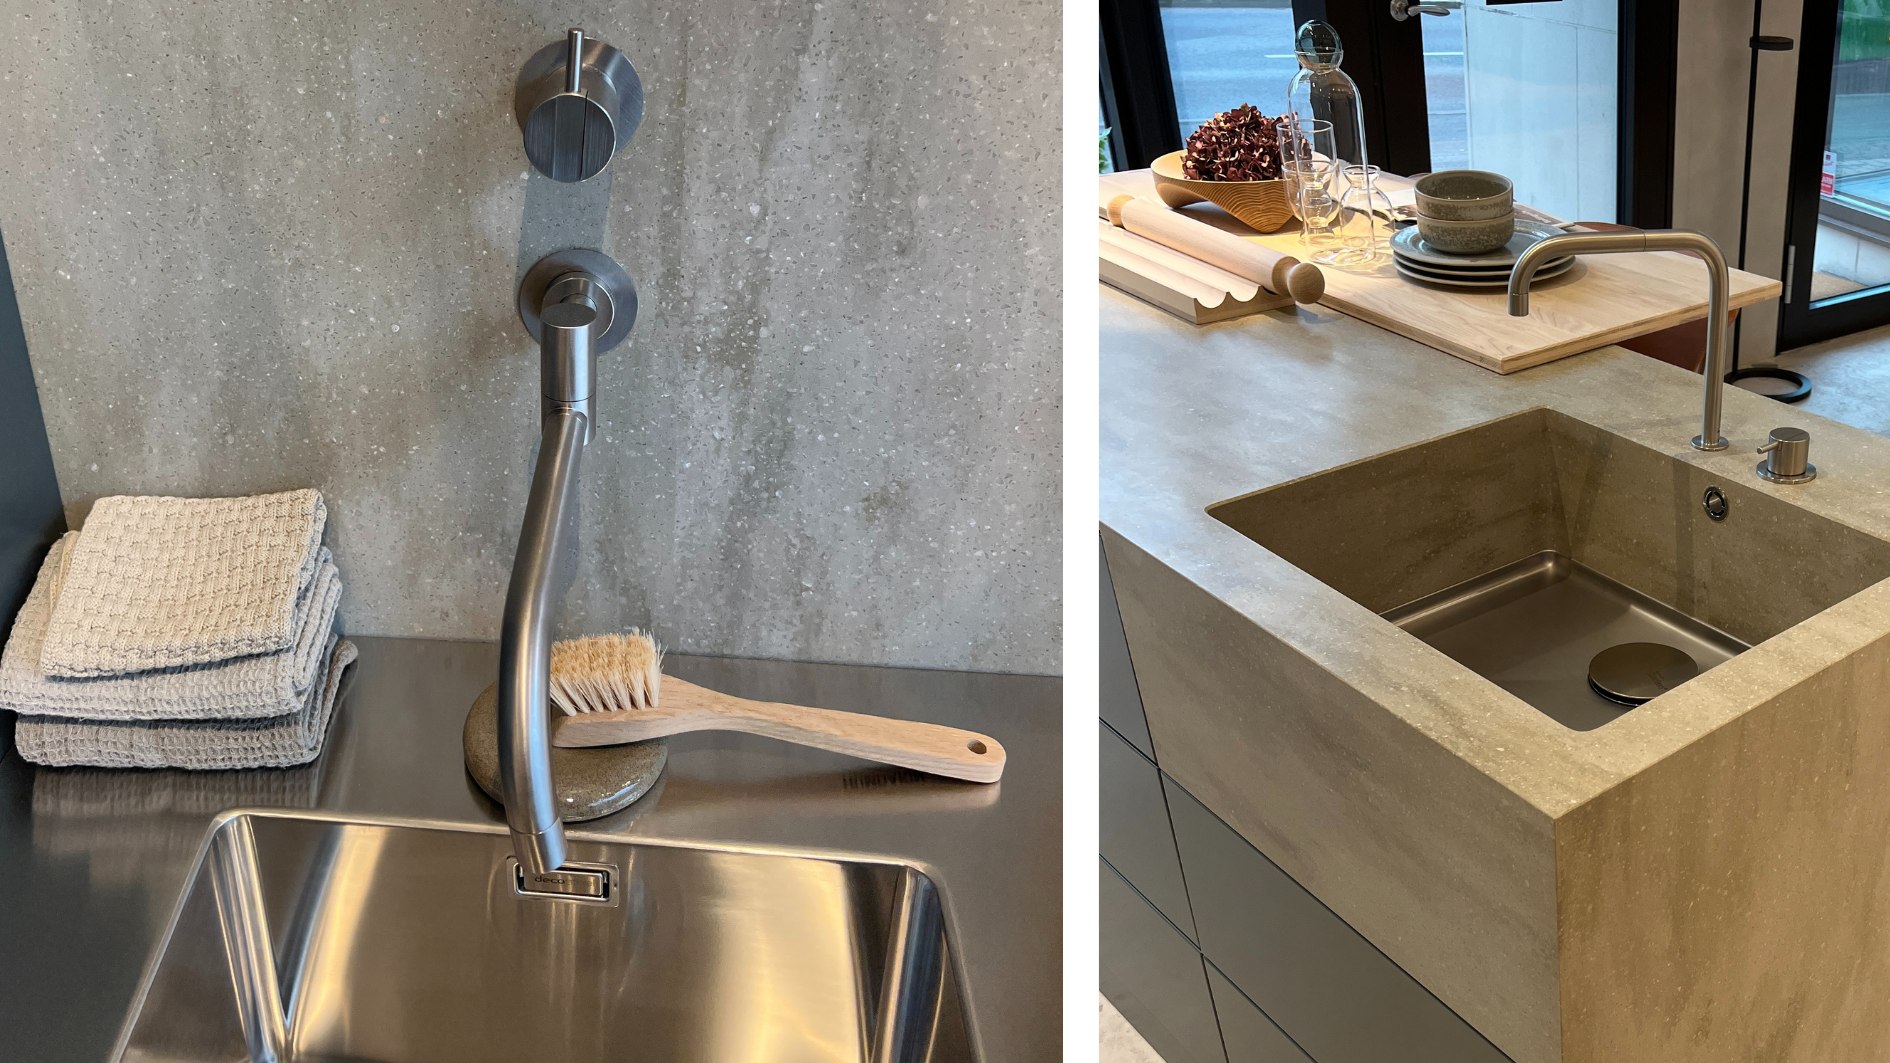 Detaljbild delad i två. till vänster detalj på inbyggd vattenkran i väggen. till höger bild på vasken som är inbygd i köksön.